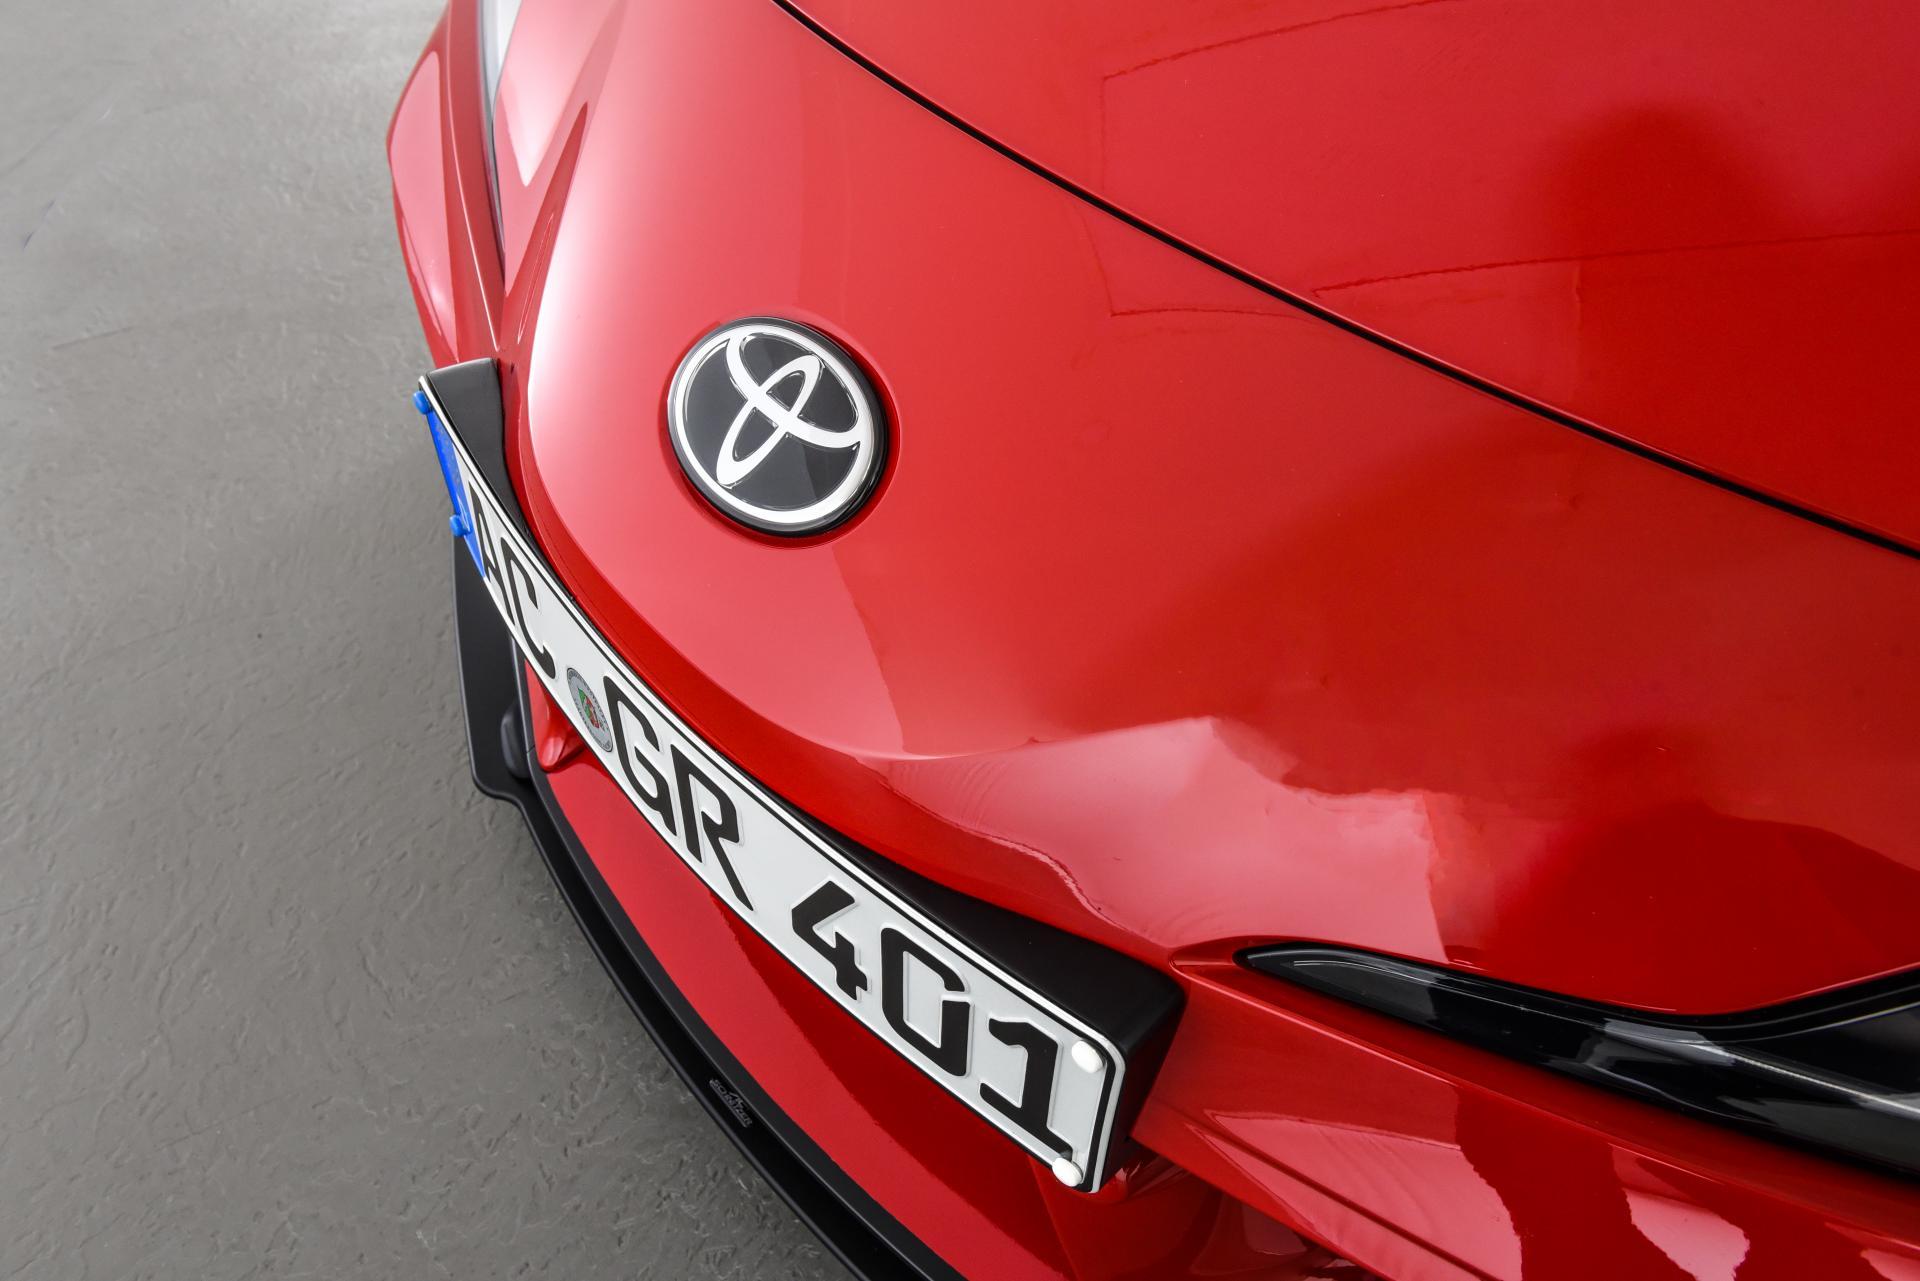 อะไรจะเกิดขึ้นเมื่อ Toyota Supra 2020 ไปอยู่ในมือของสำนักแต่งรถชื่อดัง?